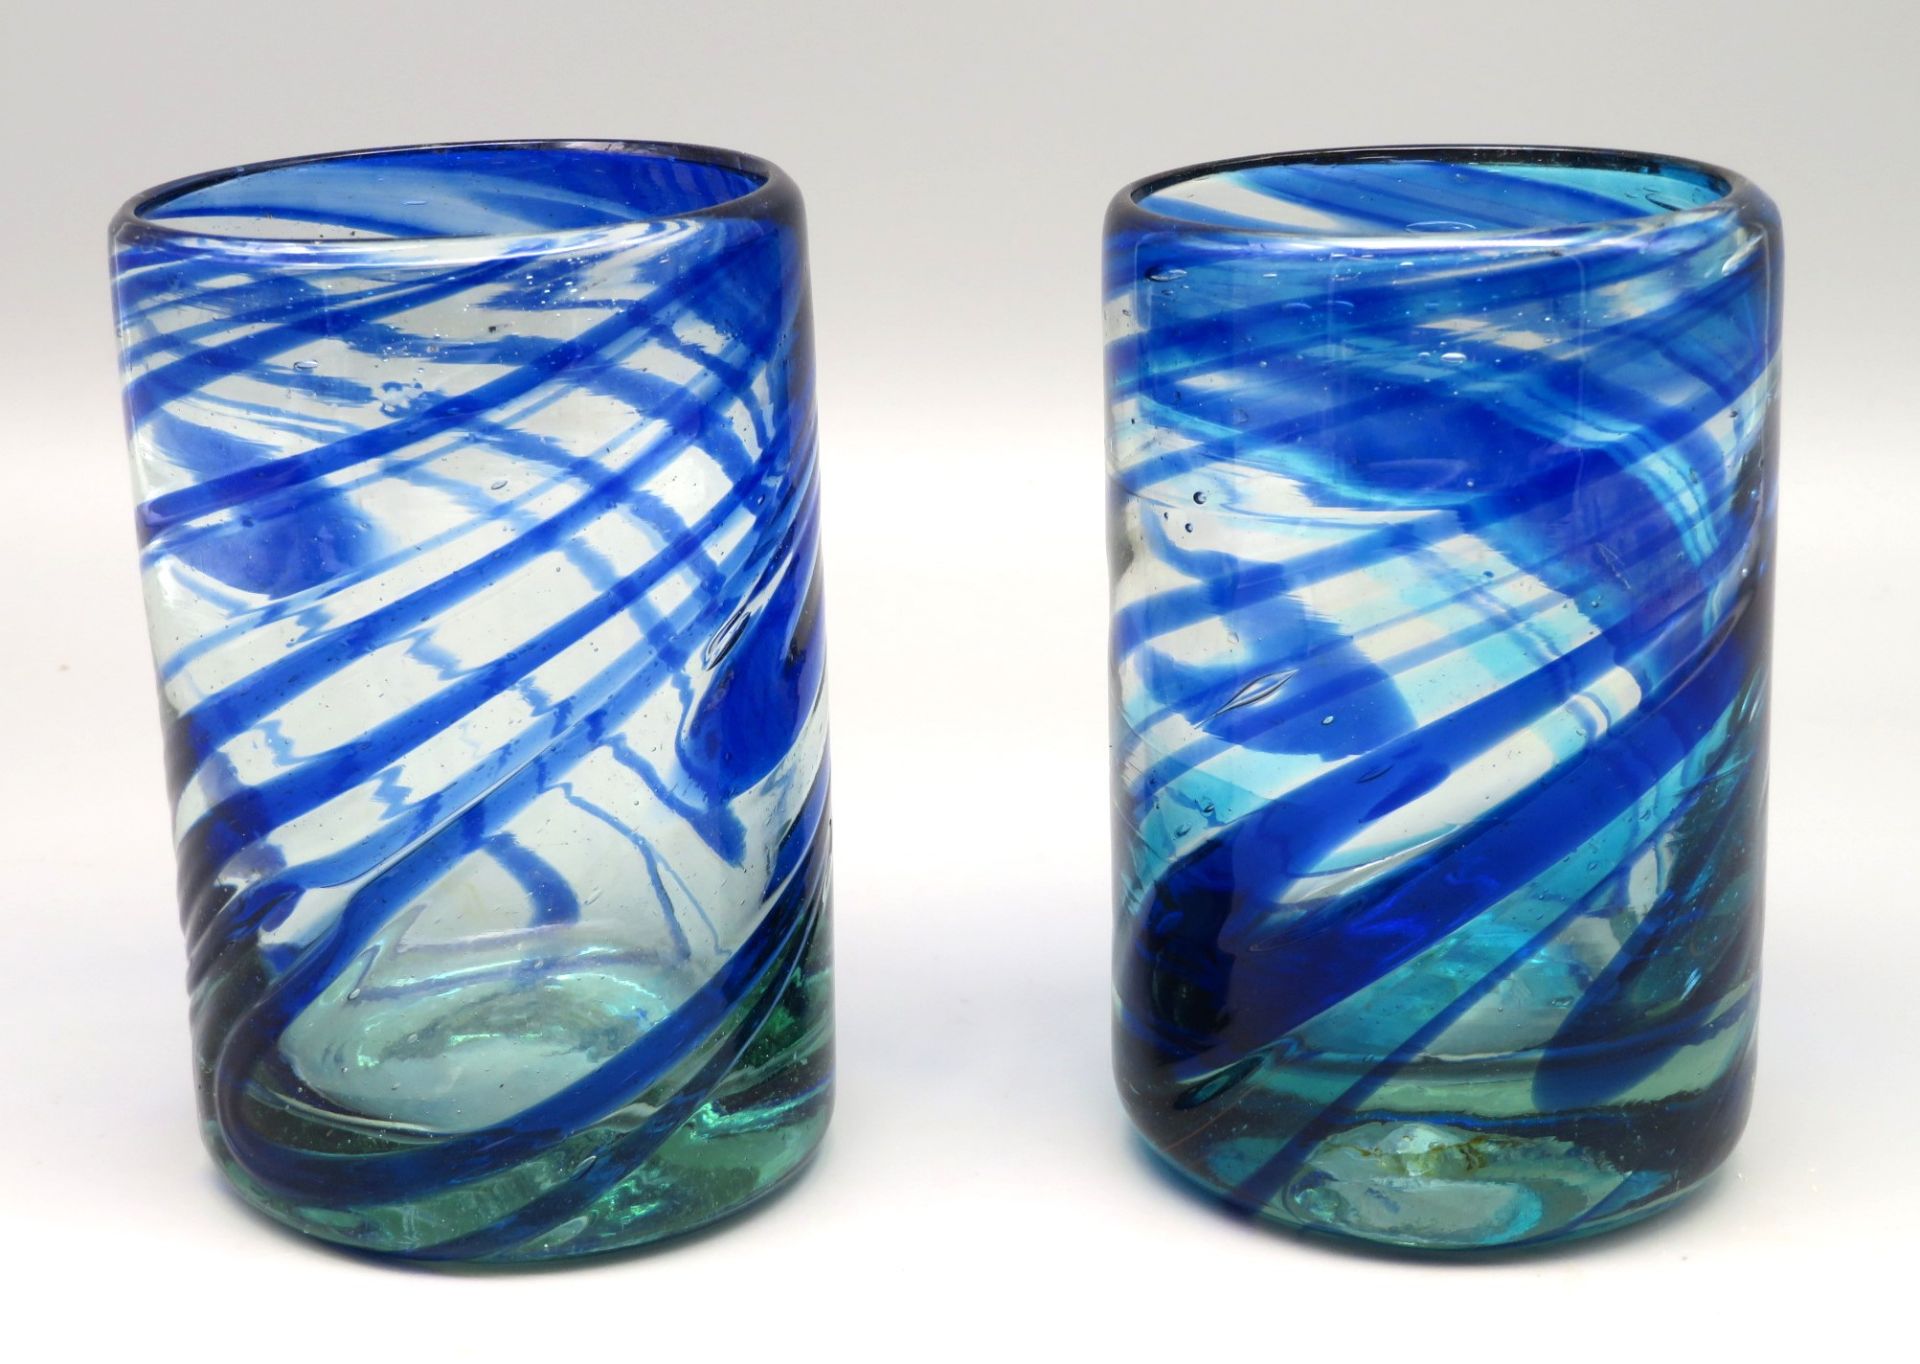 2 Designer Gläser, farbloses Glas mit blau-grünlichen, spiralförmigen Einschmelzungen, mundgeblasen